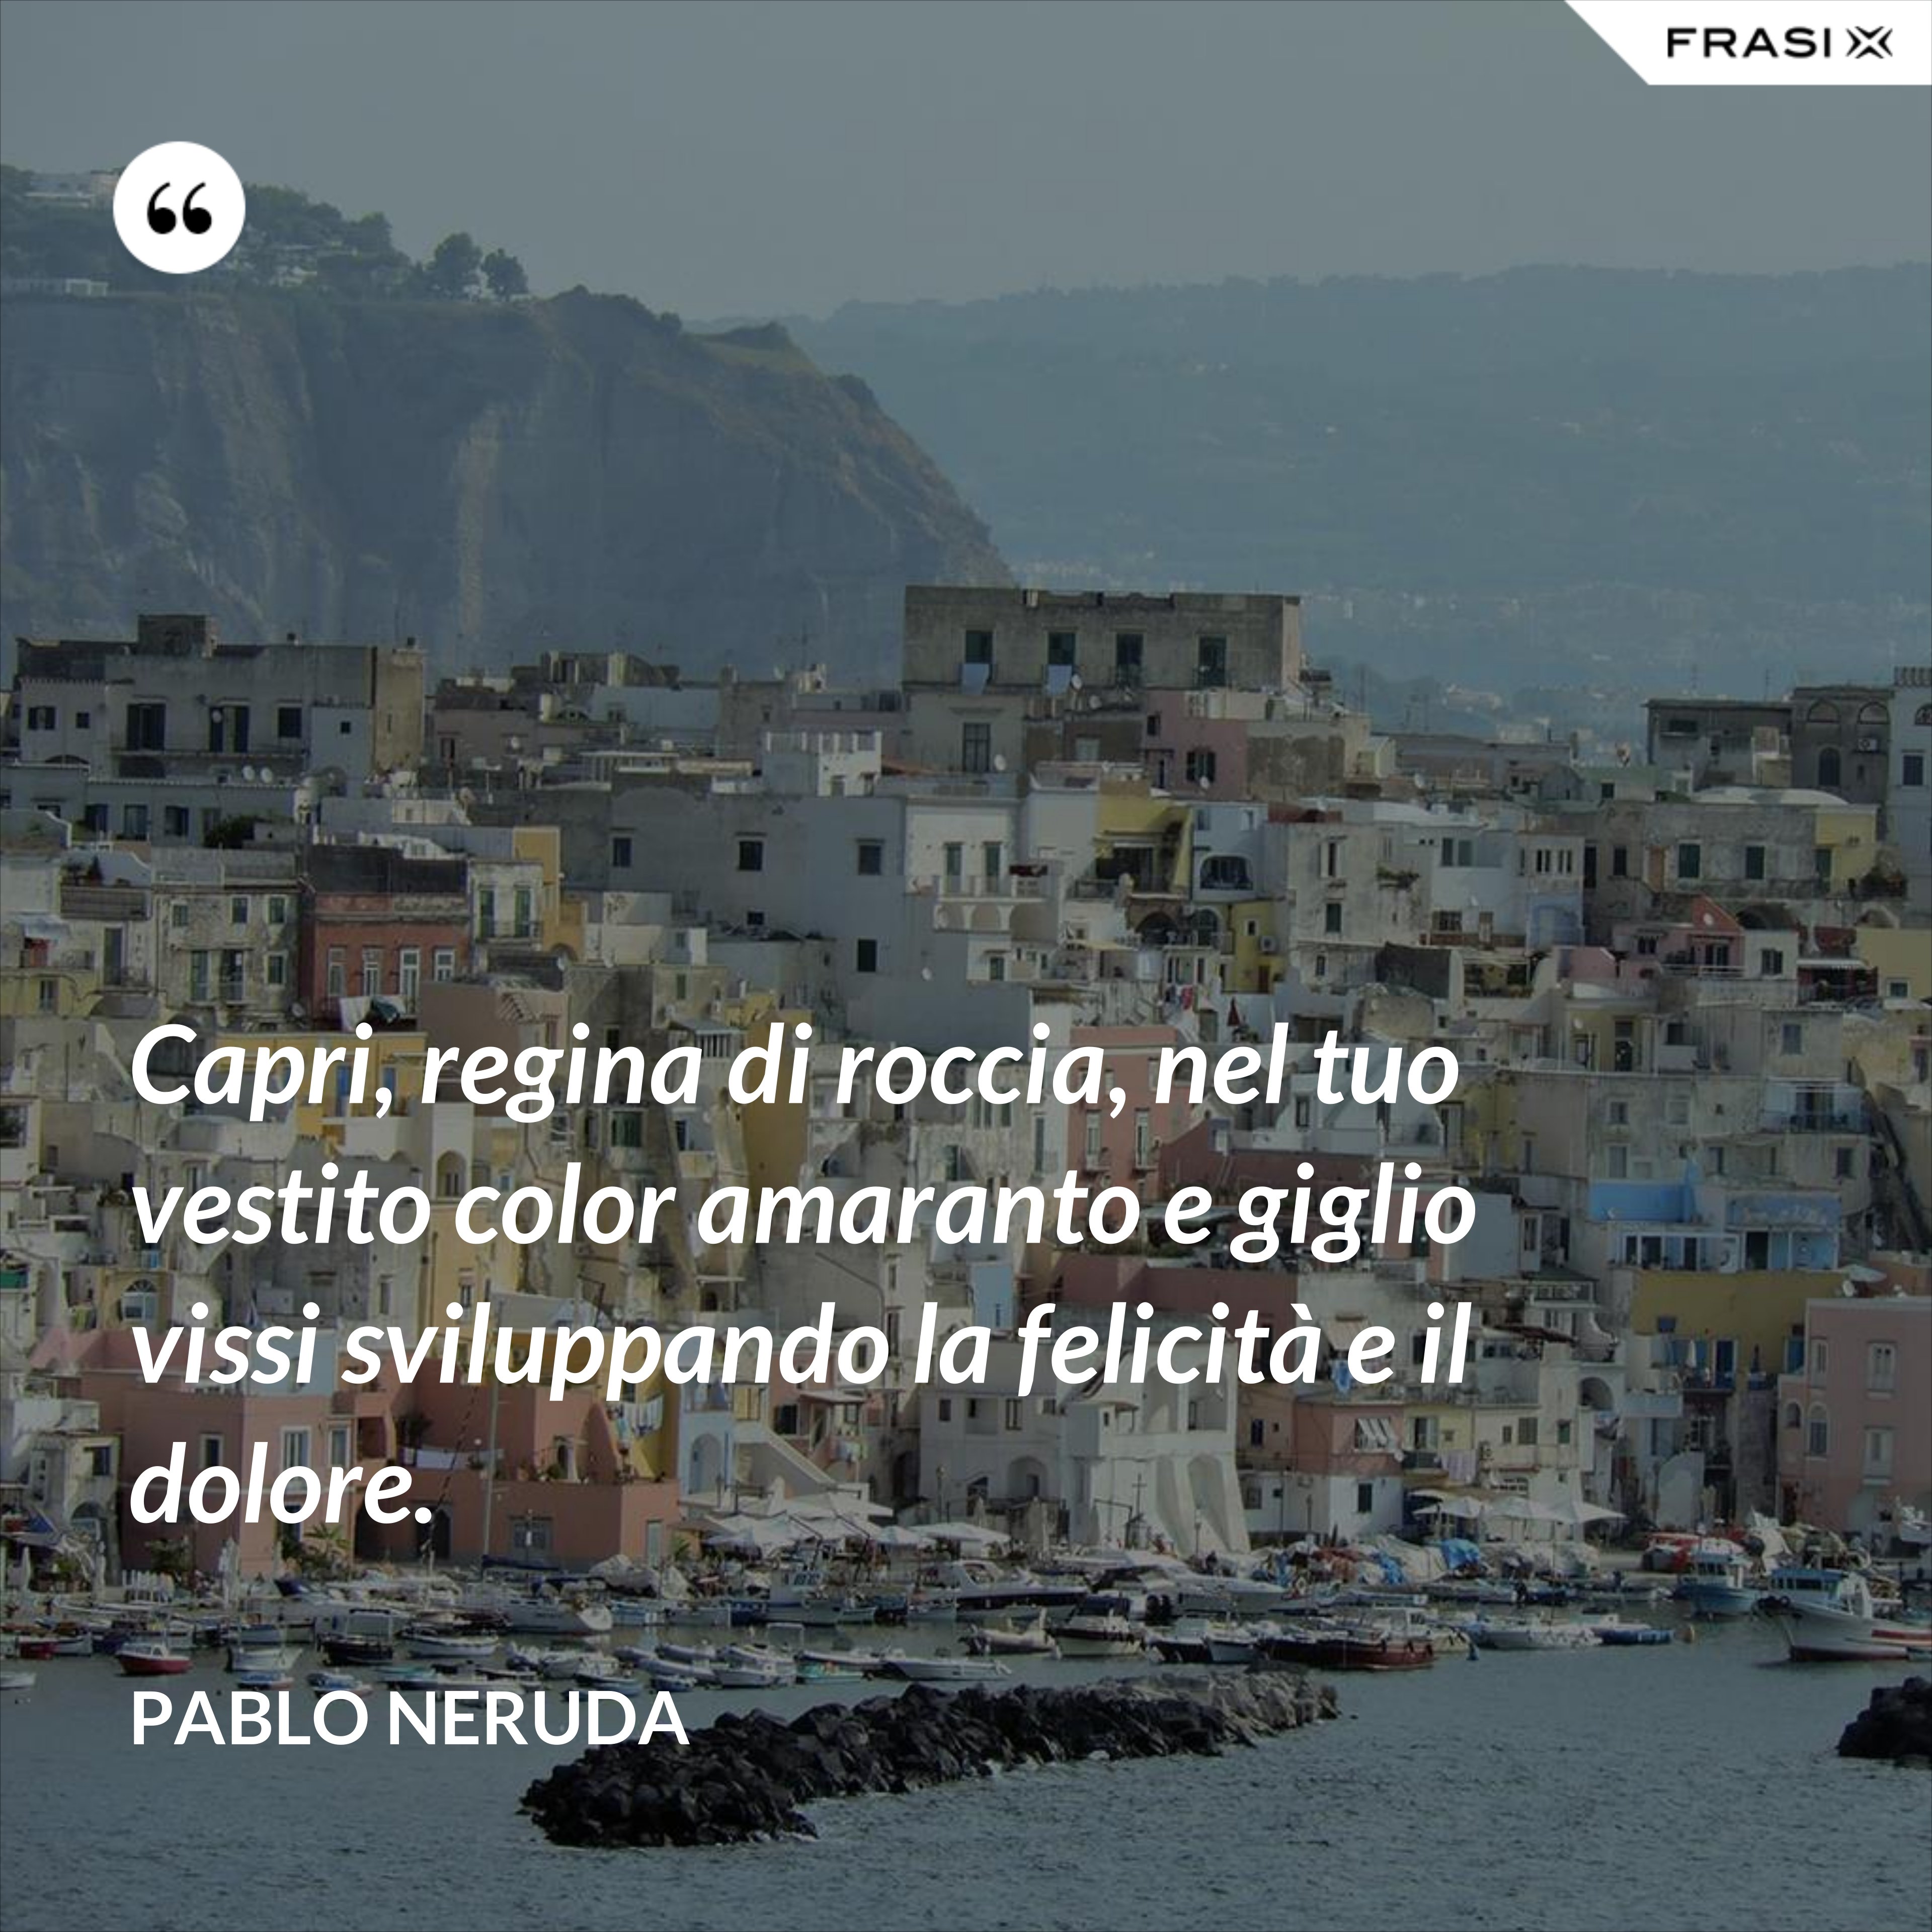 Capri, regina di roccia, nel tuo vestito color amaranto e giglio vissi sviluppando la felicità e il dolore. - Pablo Neruda